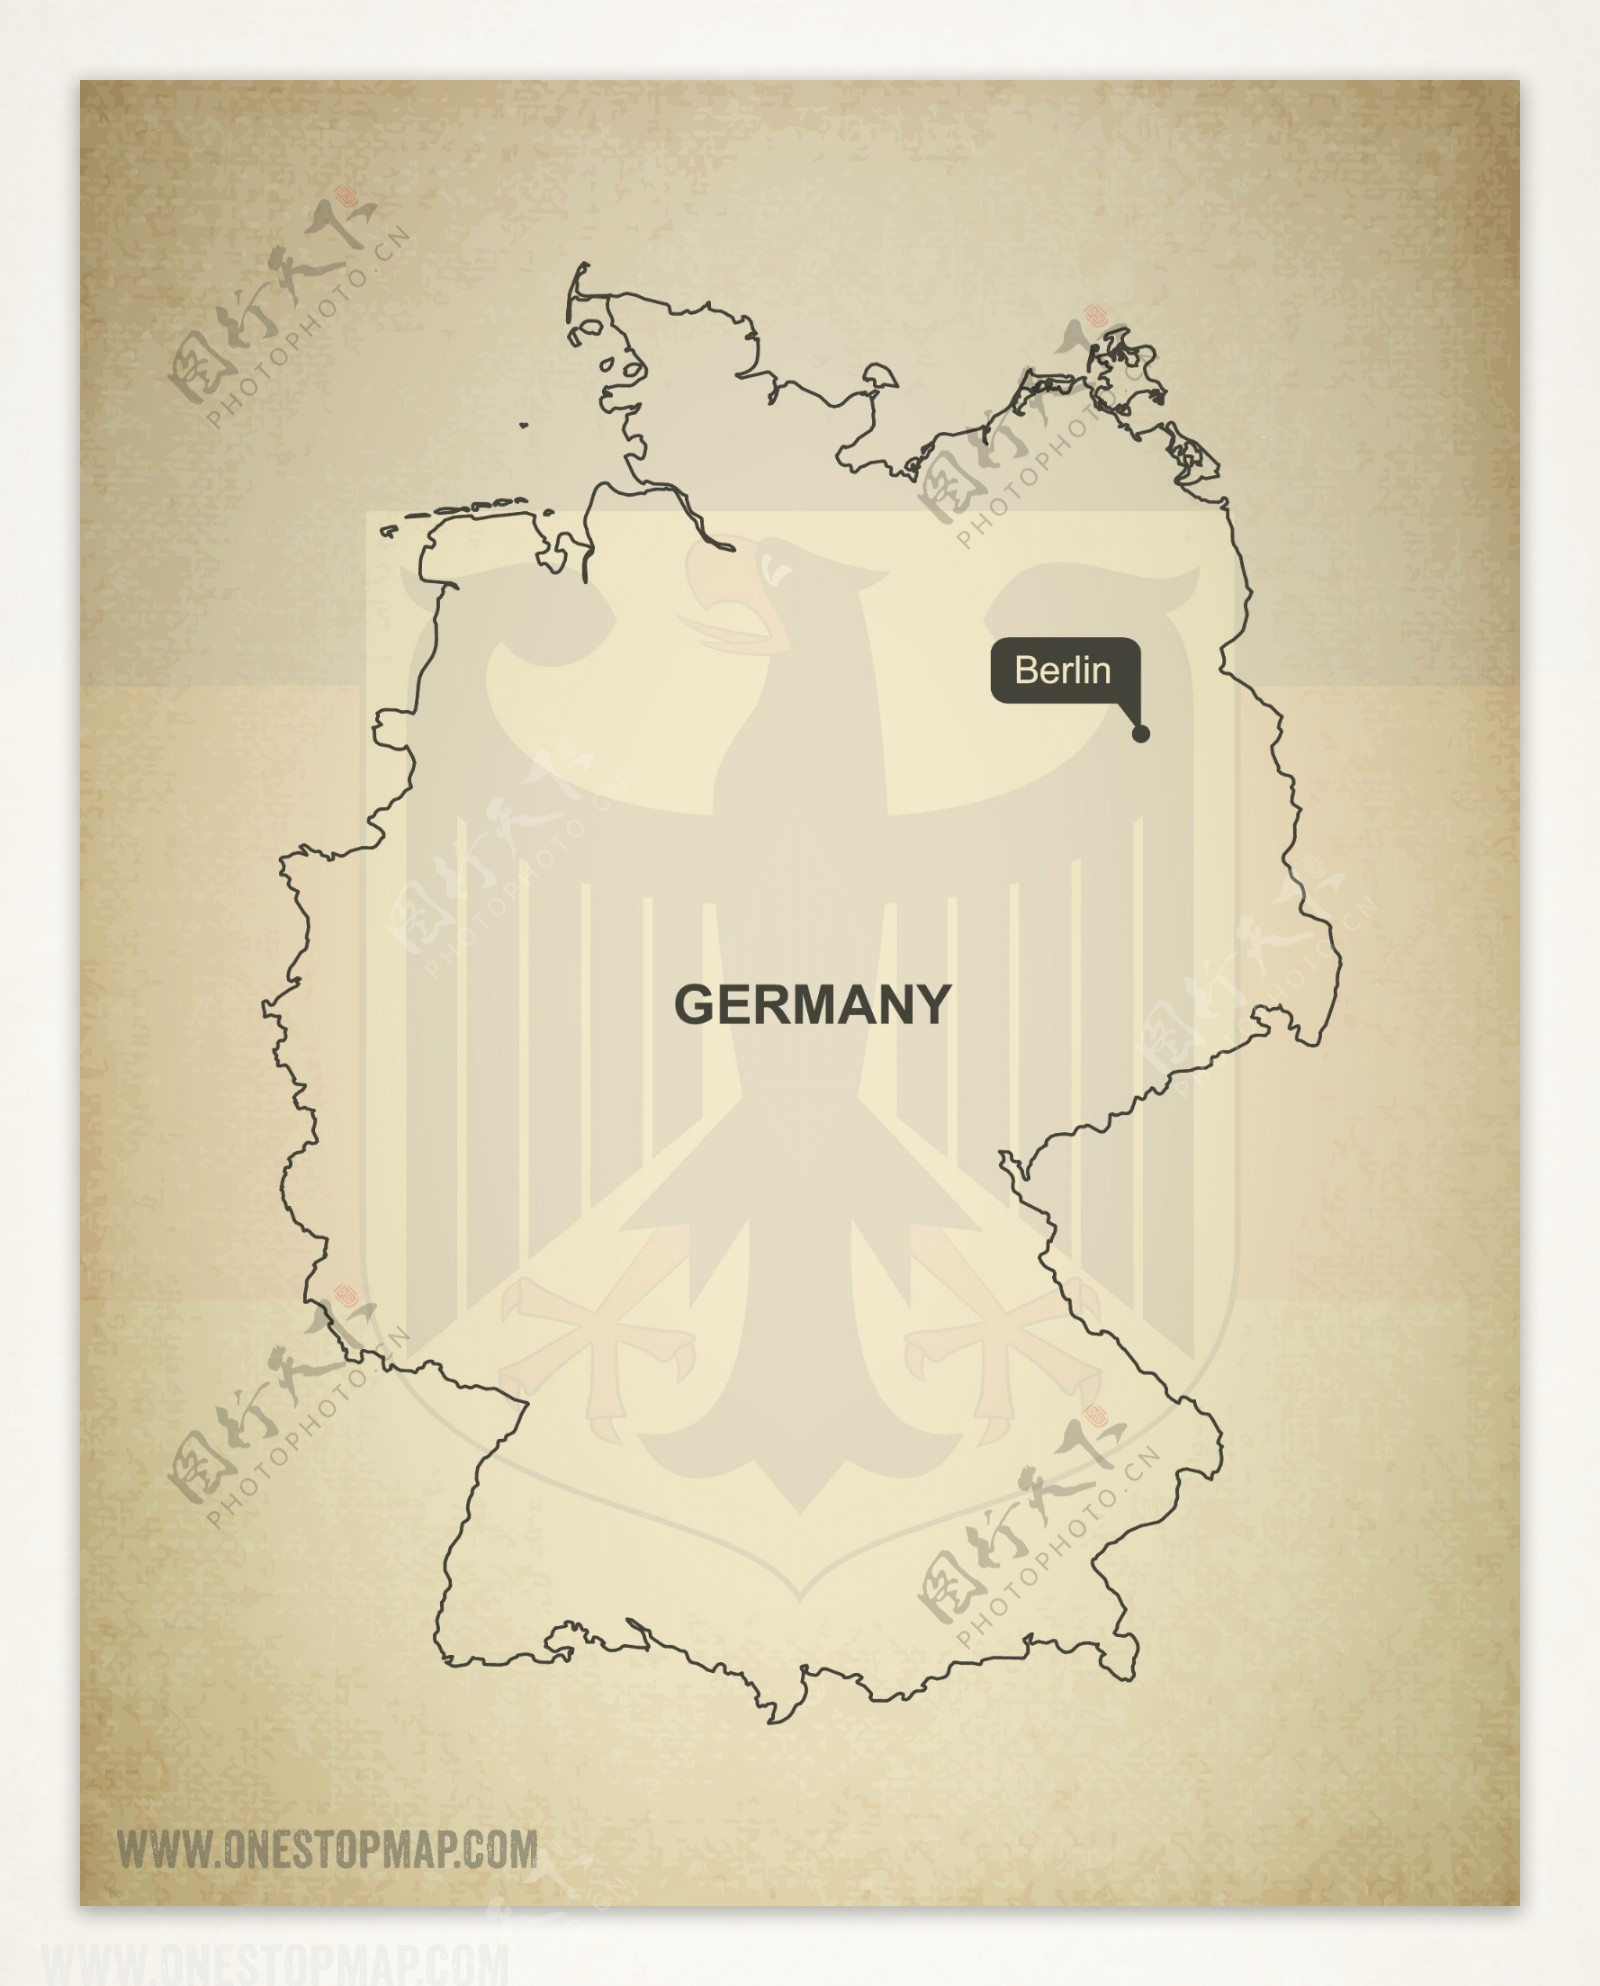 矢量德国地图